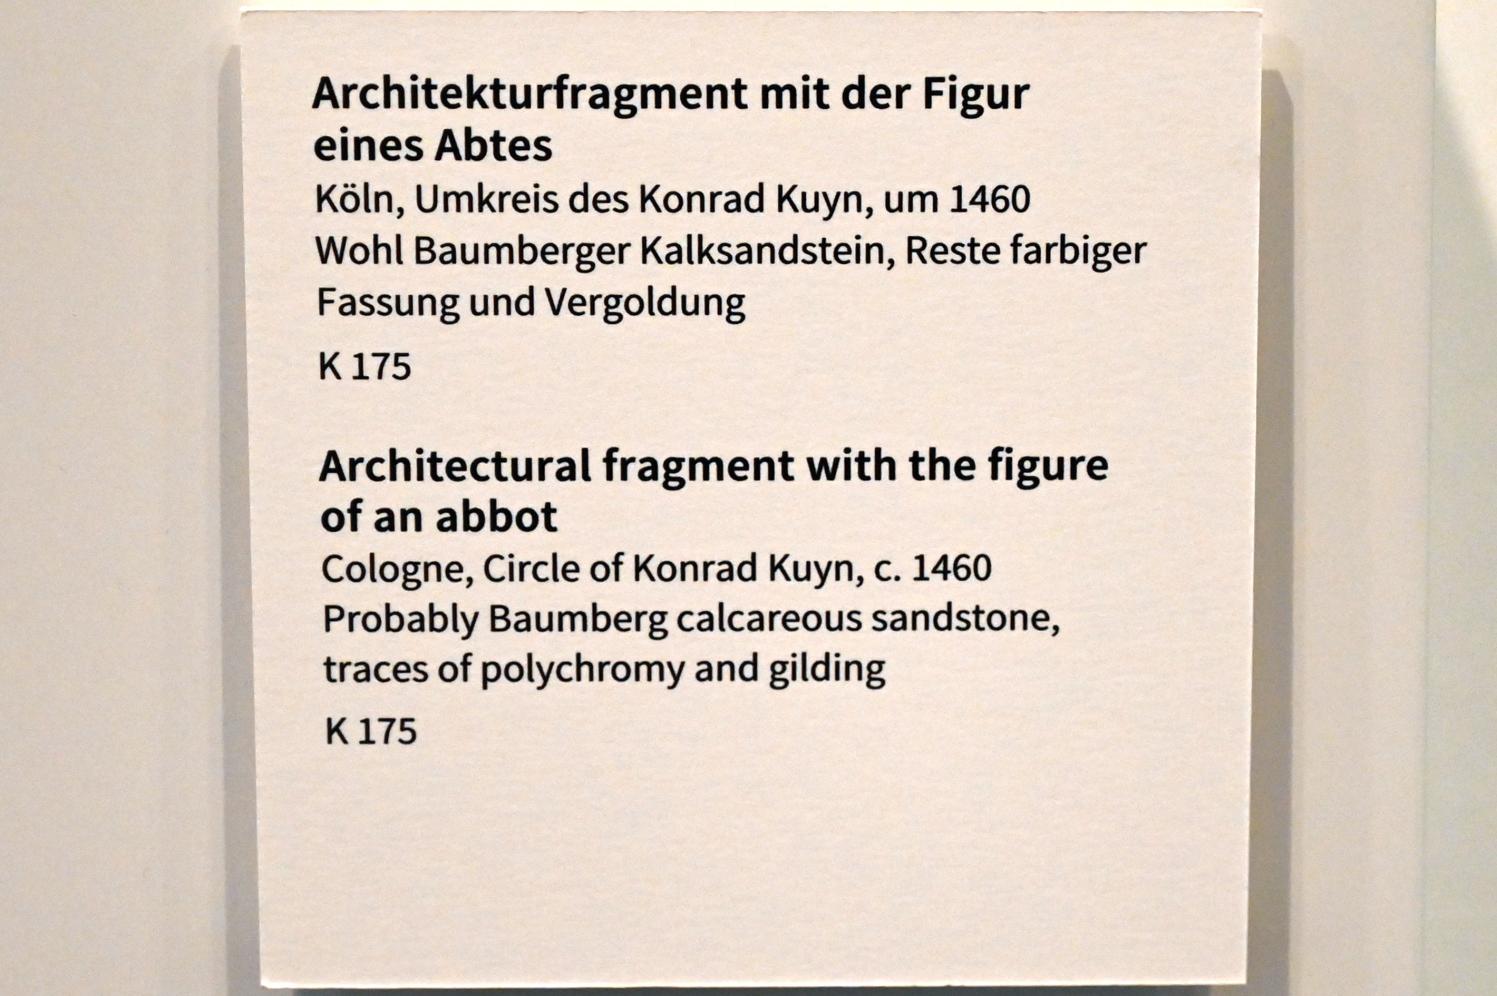 Konrad Kuene (Kuyn) van der Hallen (Umkreis) (1460), Architekturfragment mit der Figur eines Abtes, Köln, Museum Schnütgen, Saal 2, um 1460, Bild 3/3